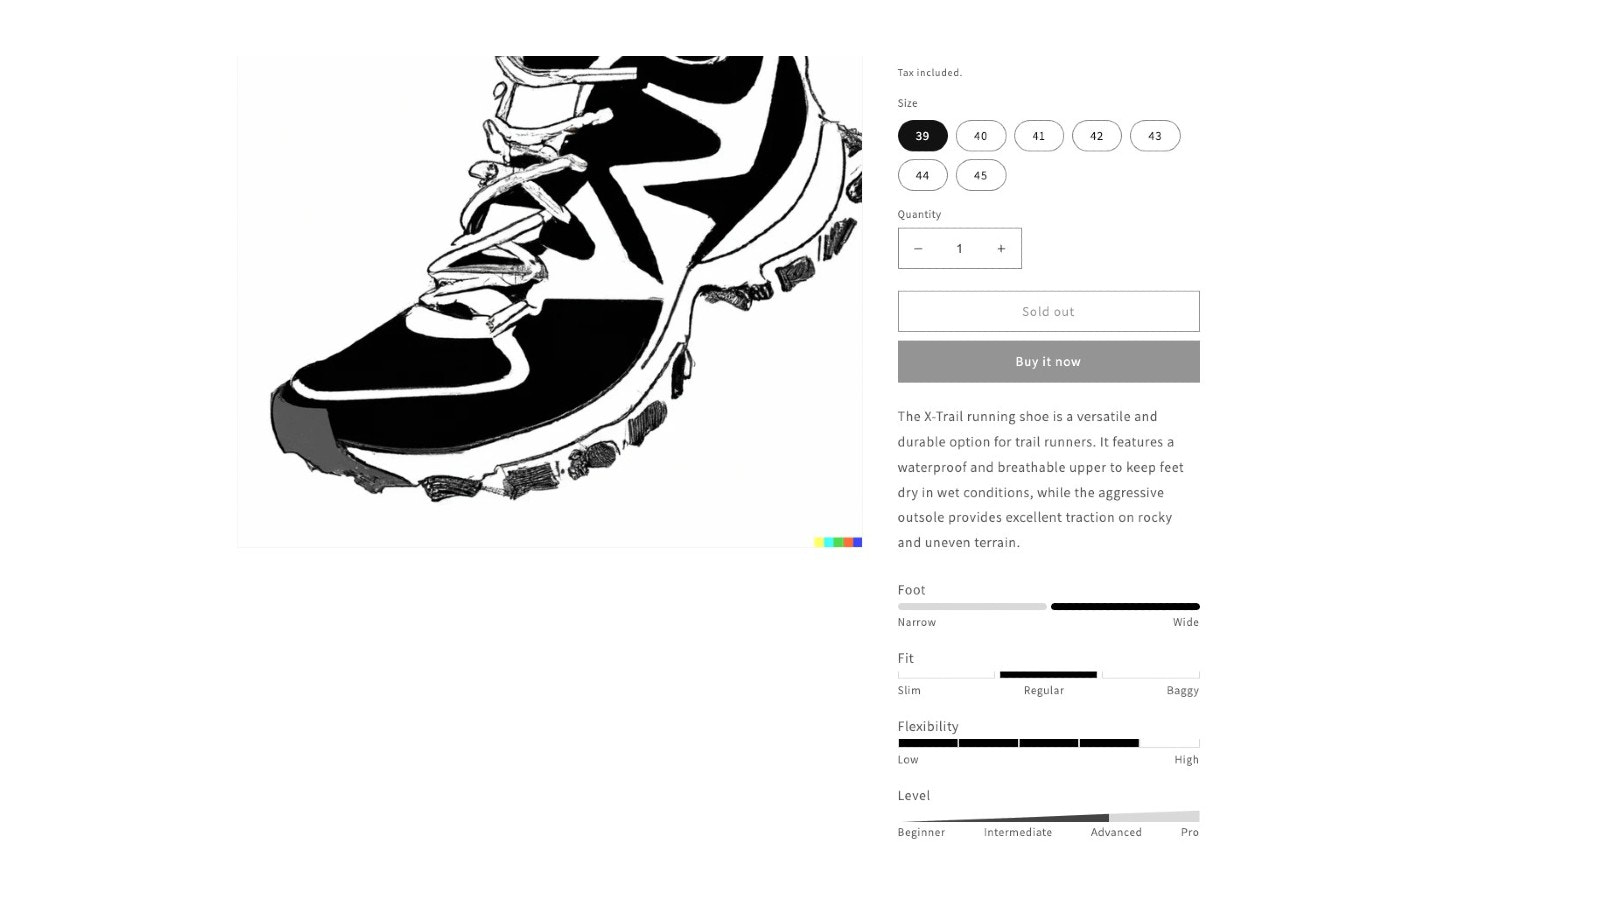 Productspecificatie kenmerken in PDP trail schoenen voorbeeld